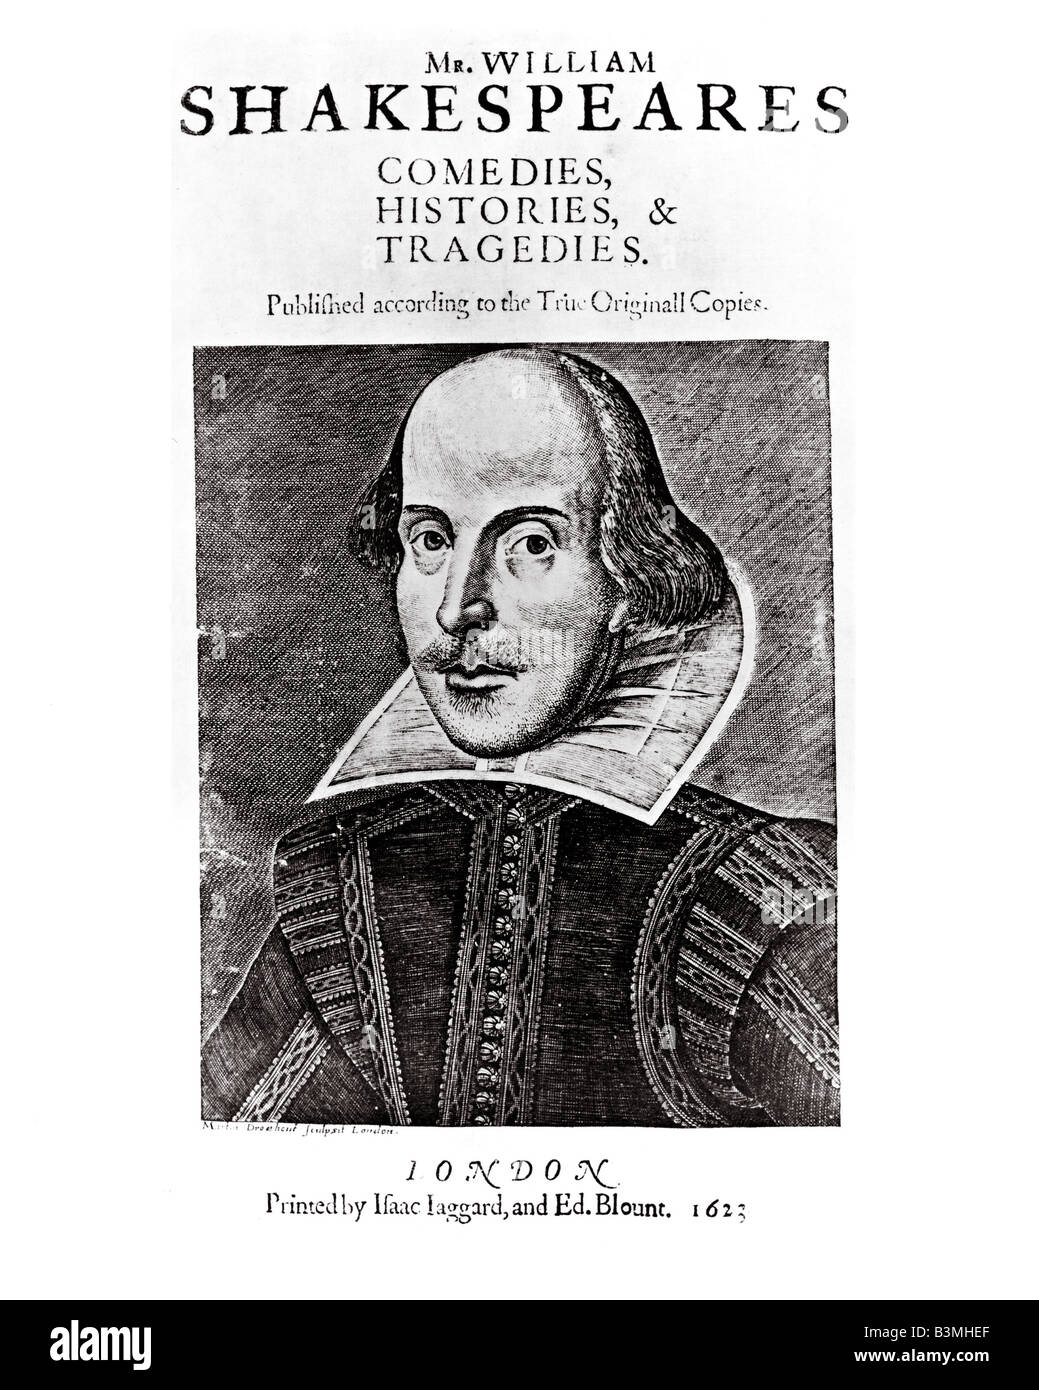 FIRST FOLIO page de titre de la première édition de Shakespeare publiée en 1623 avec une gravure par Martin Droeshout Banque D'Images